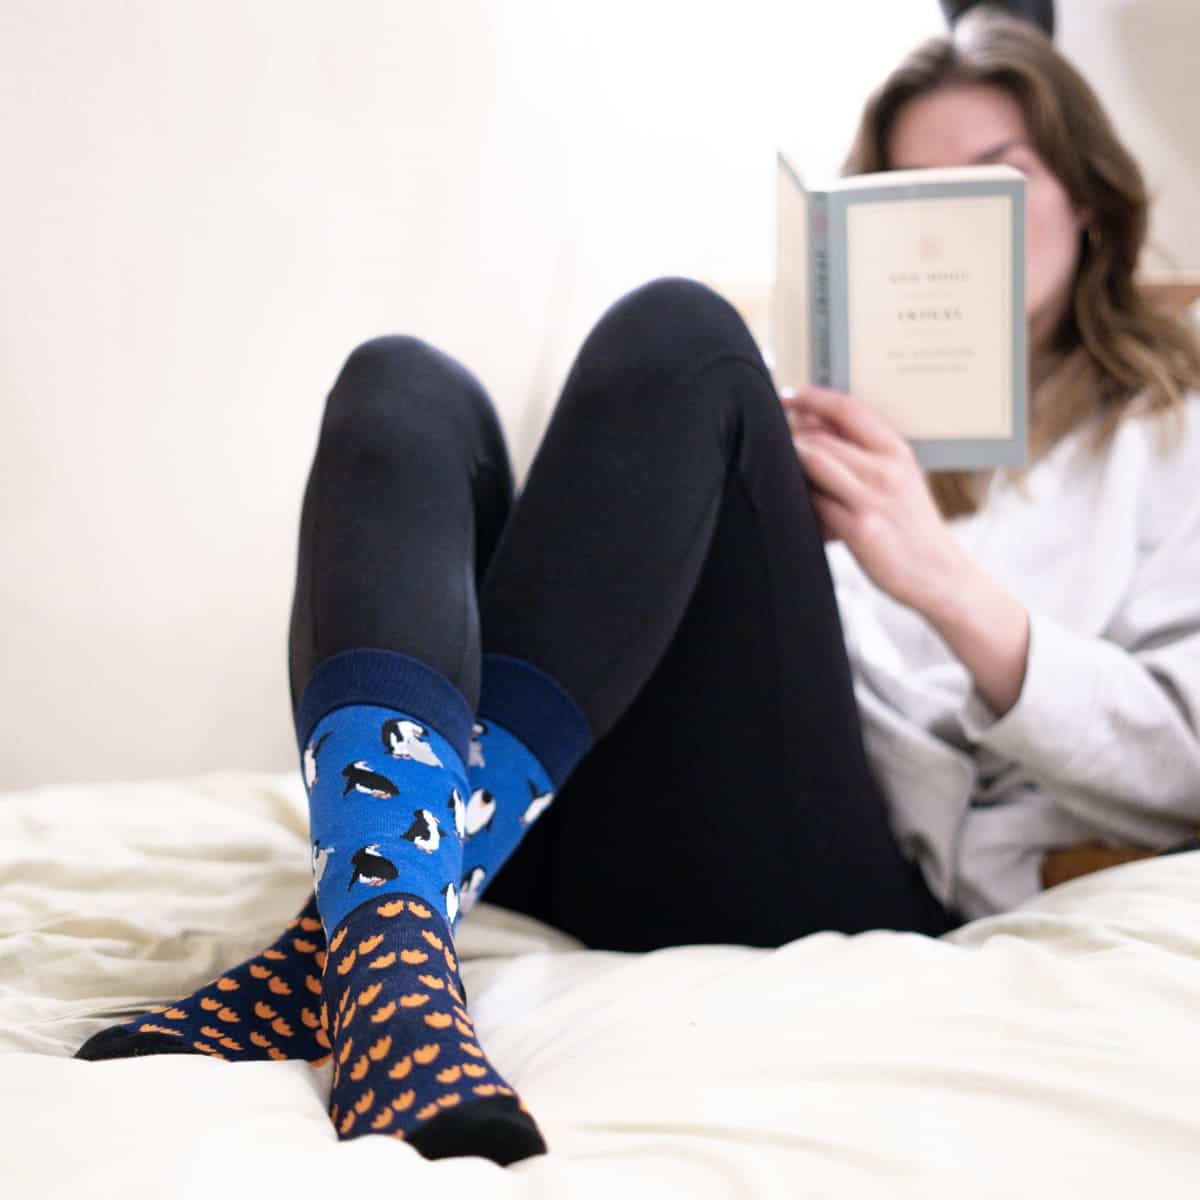 Pinguin Socken von PATRON SOCKS auf Bett